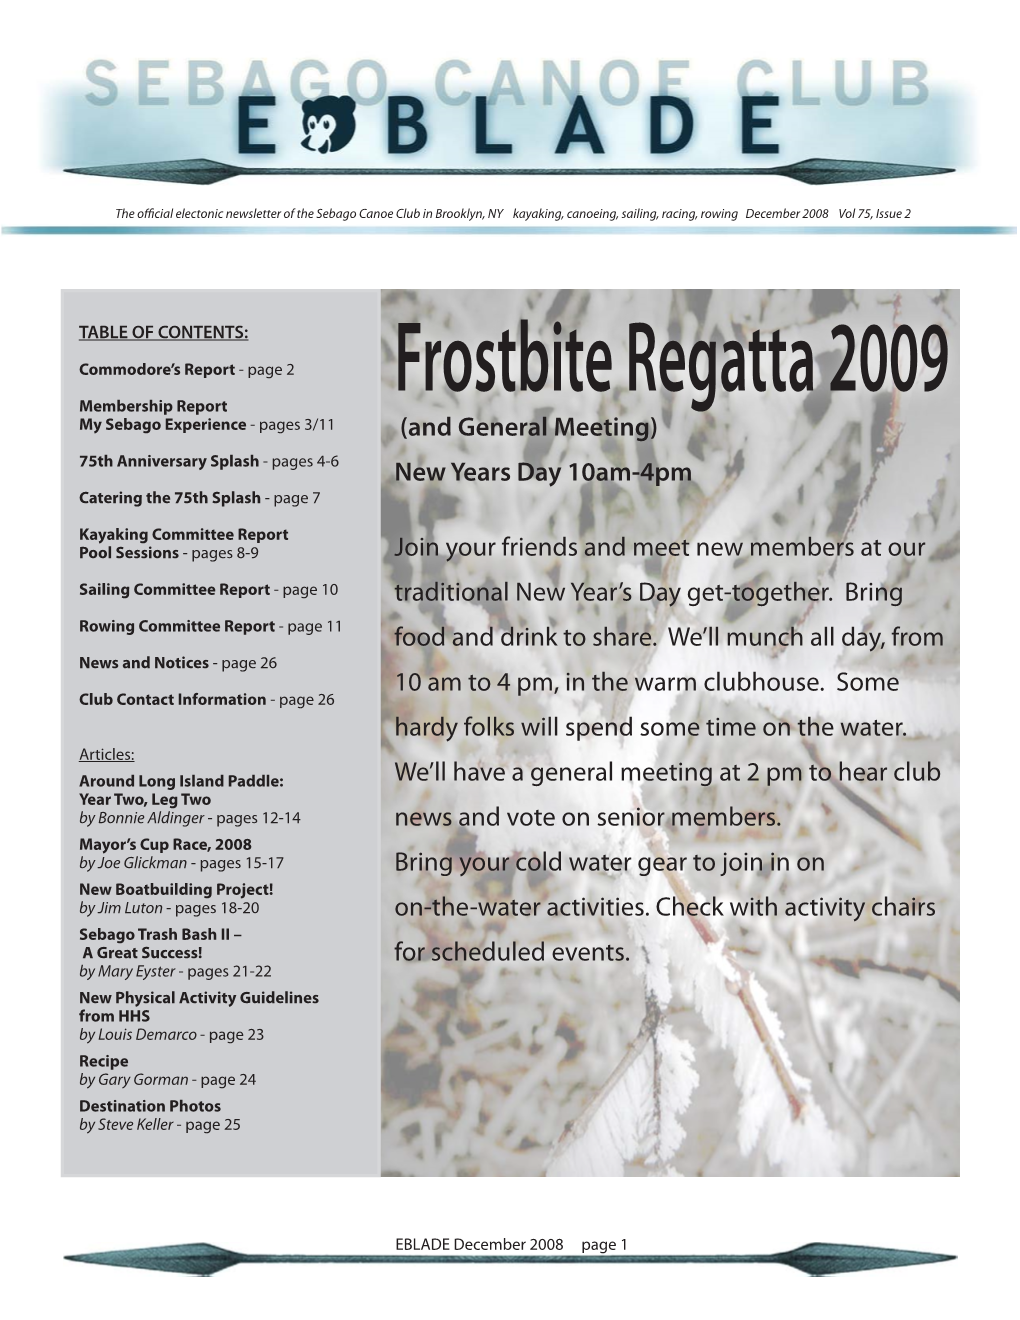 Frostbite Regatta 2009